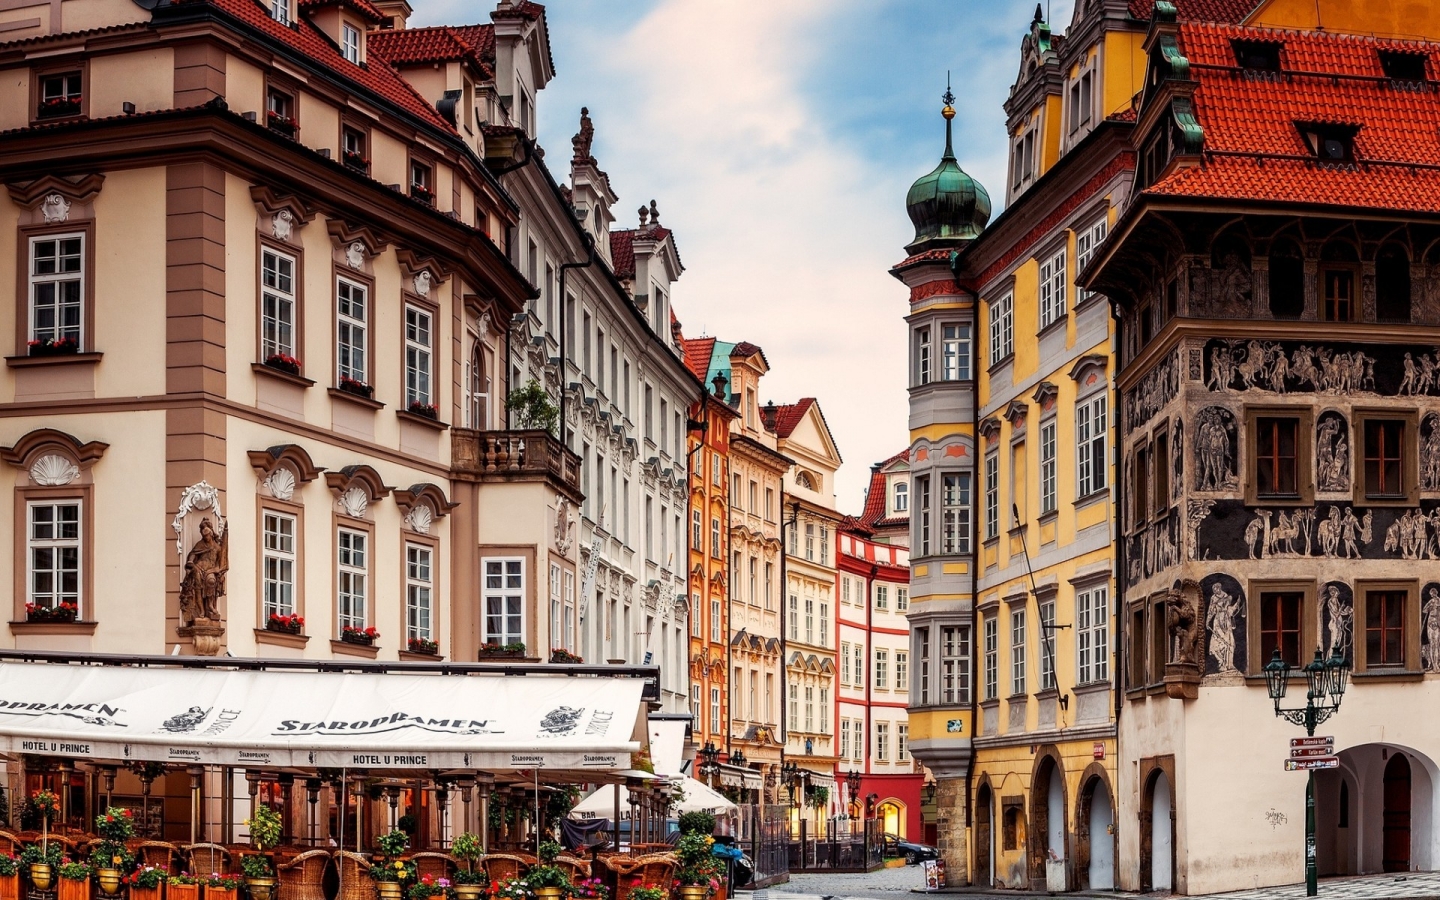 Prague Street Corner for 1440 x 900 widescreen resolution